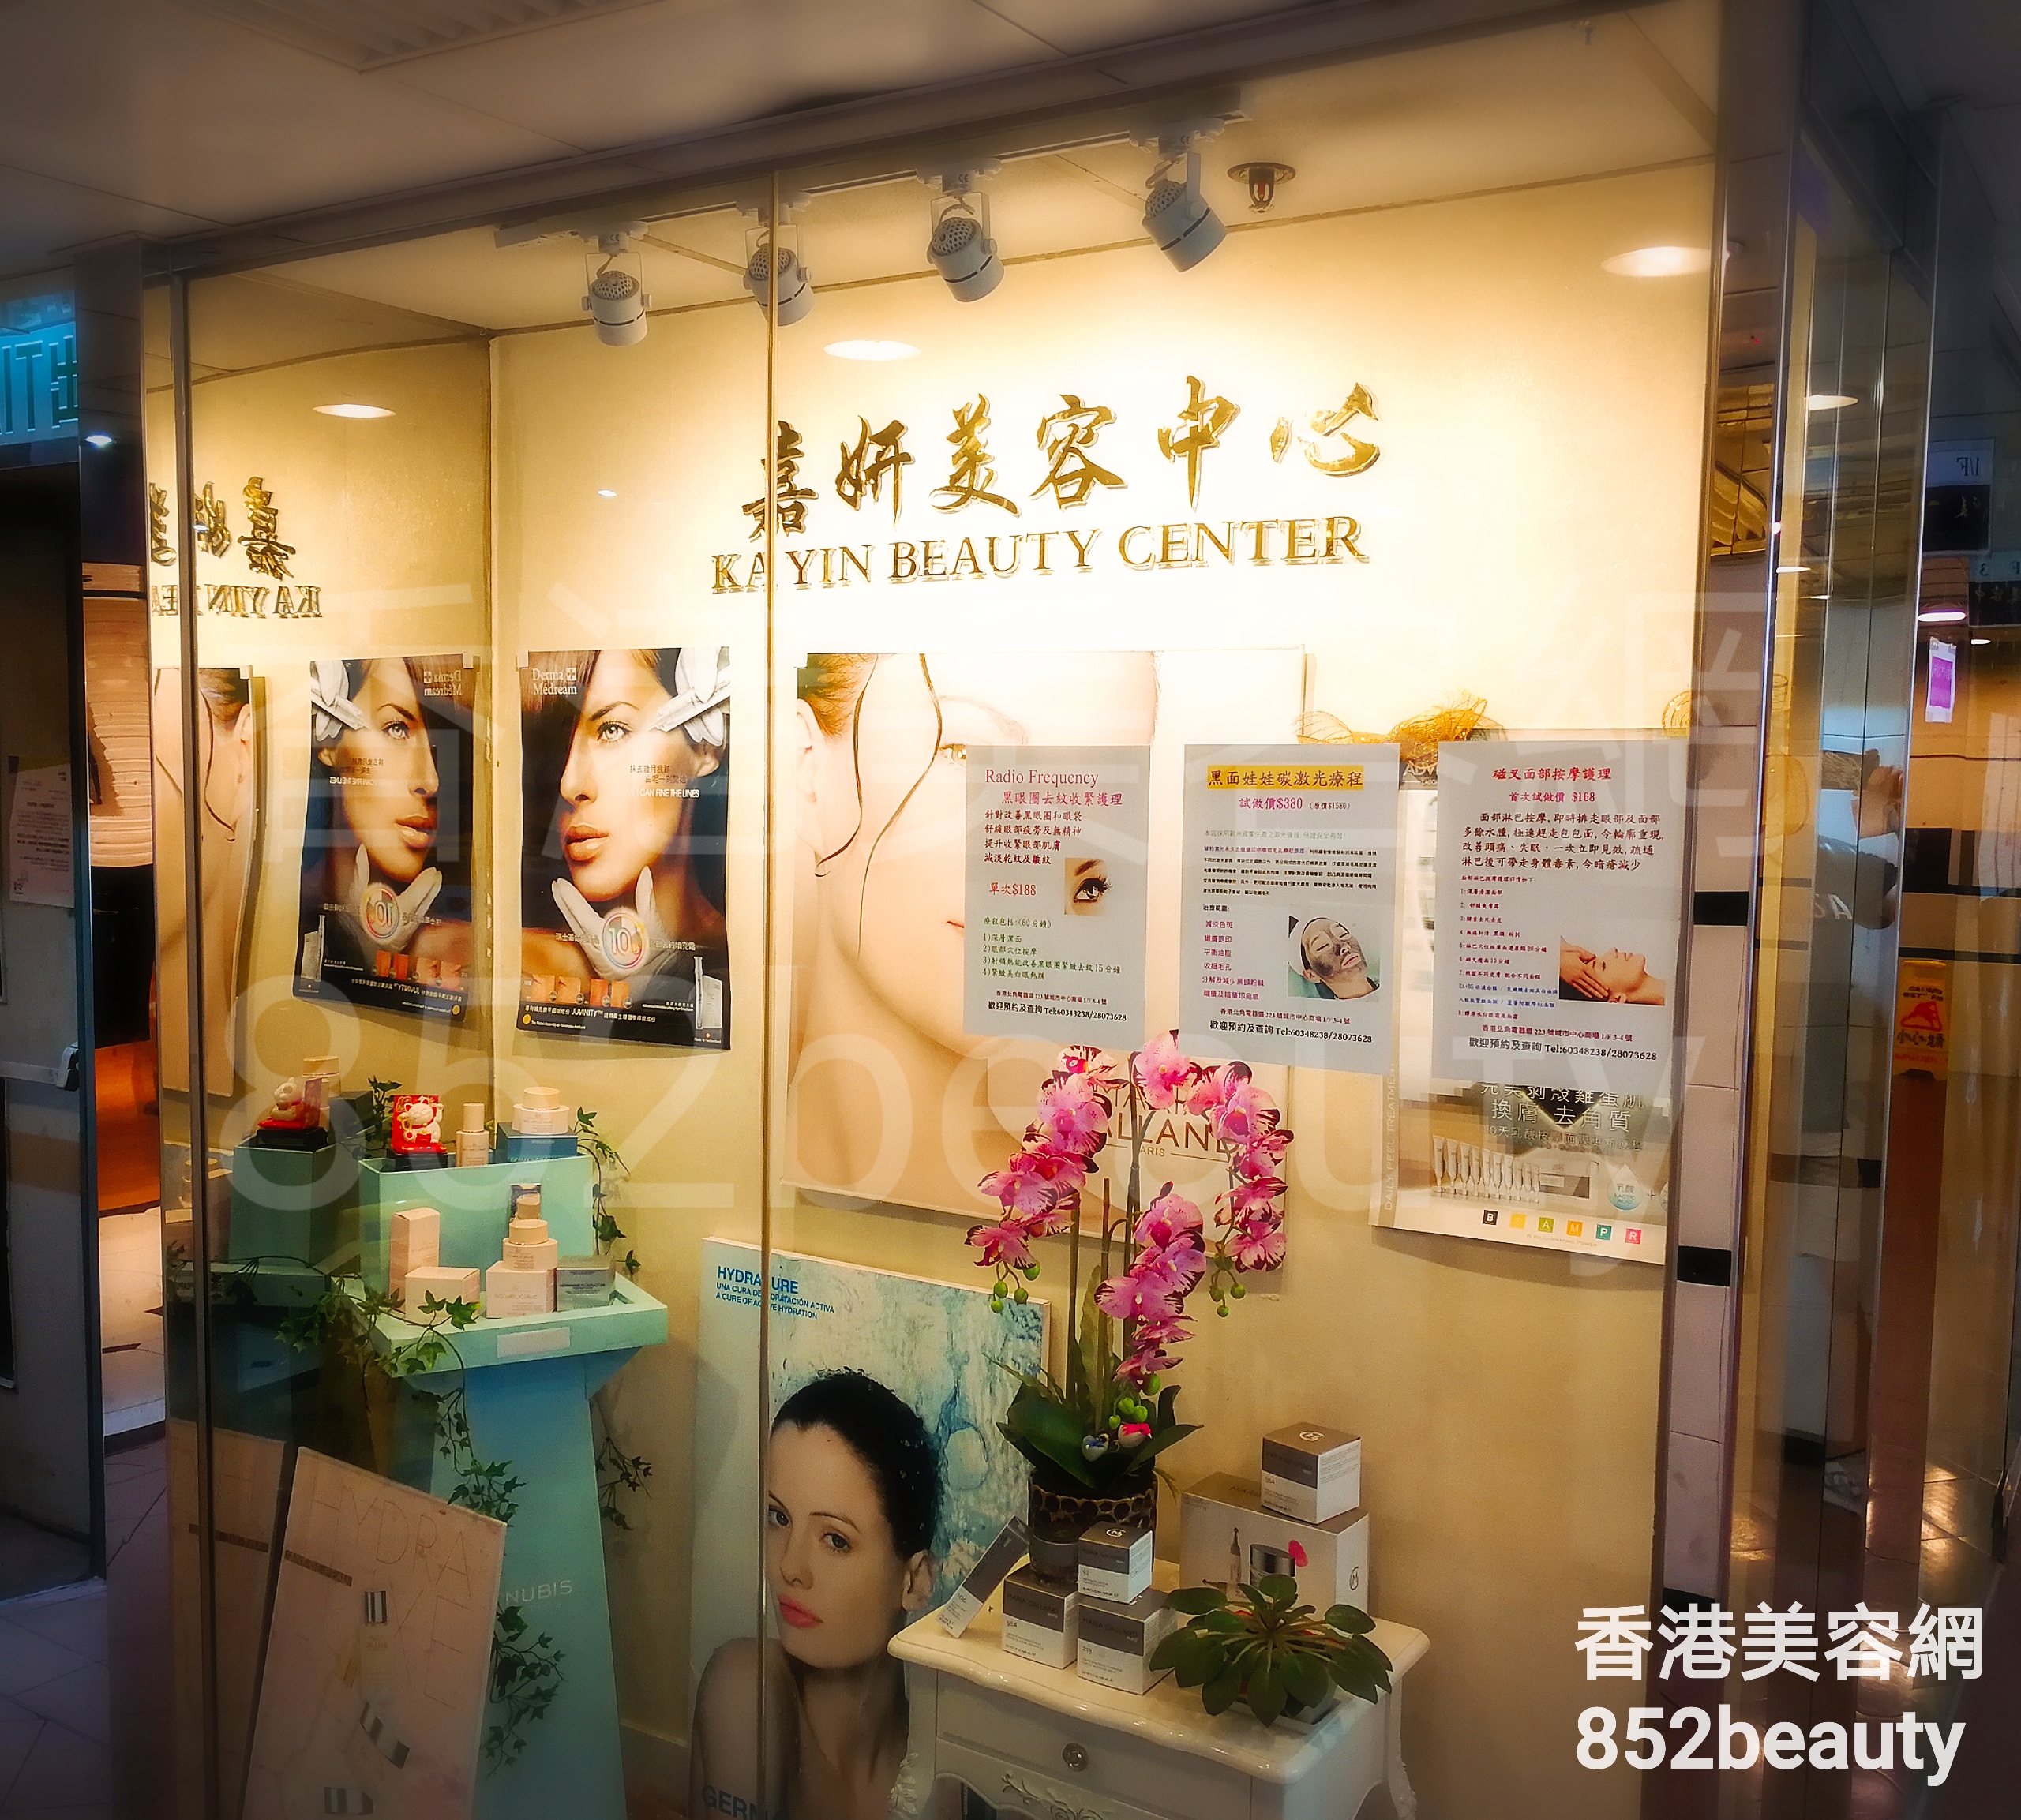 香港美容網 Hong Kong Beauty Salon 美容院 / 美容師: 嘉妍美容中心